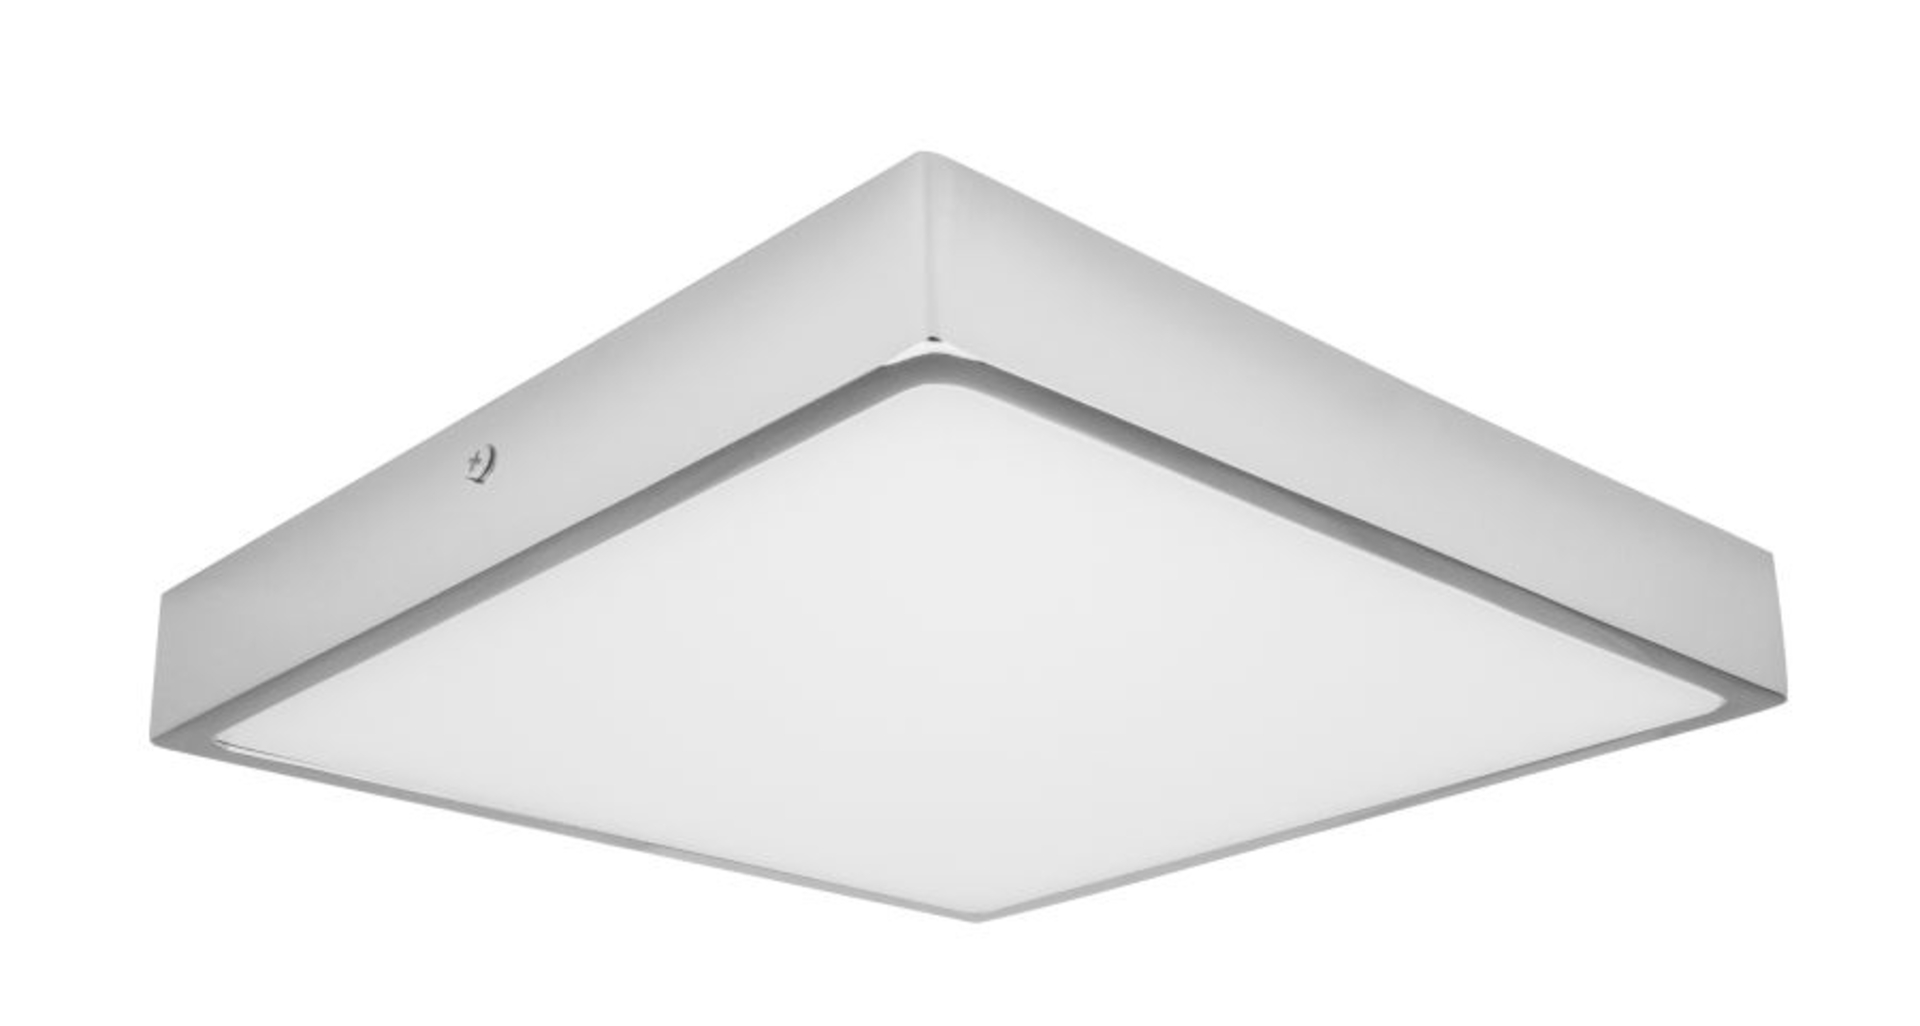 Palnas stropní LED svítidlo Egon čtverec 61003610